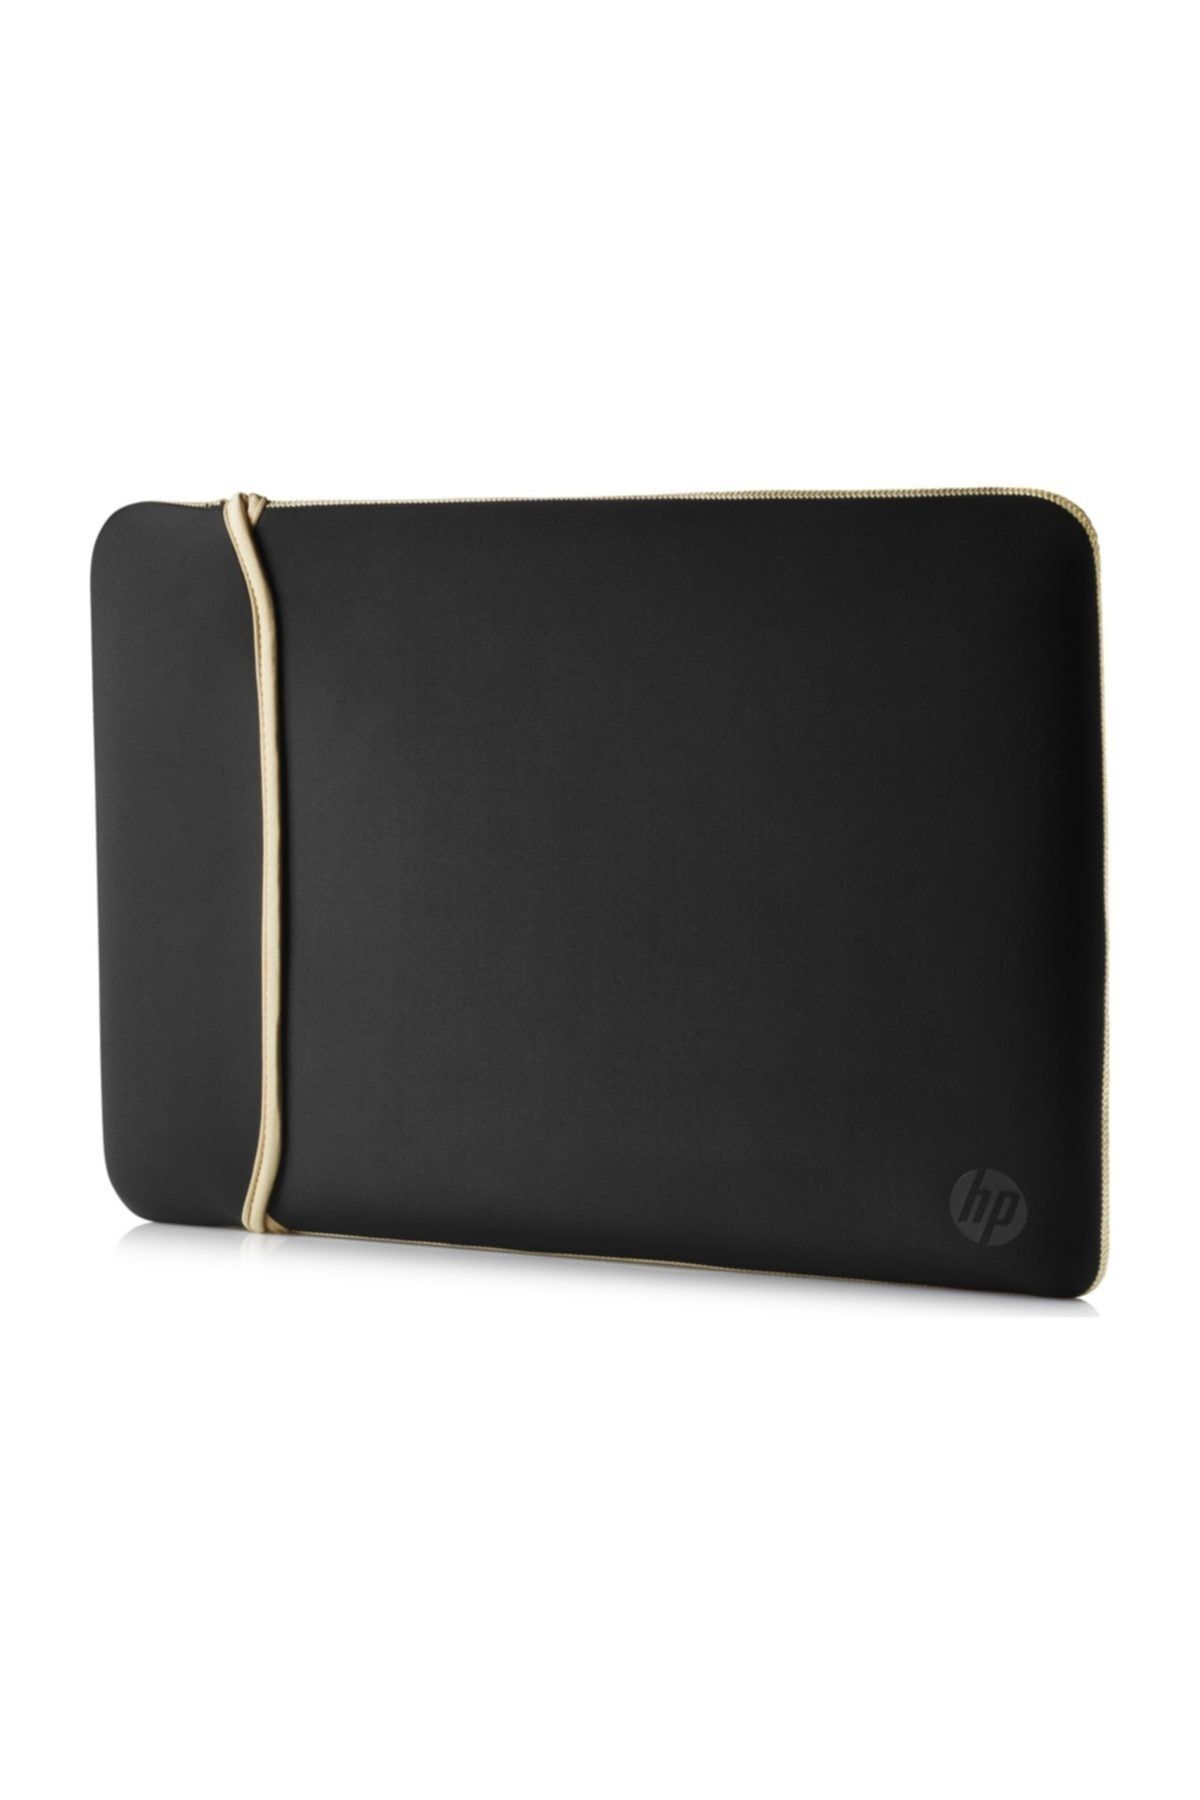 HP 14 Inc Neopren Çevrilebilir Notebook Kılıf Siyah/Gold 2uf59aa